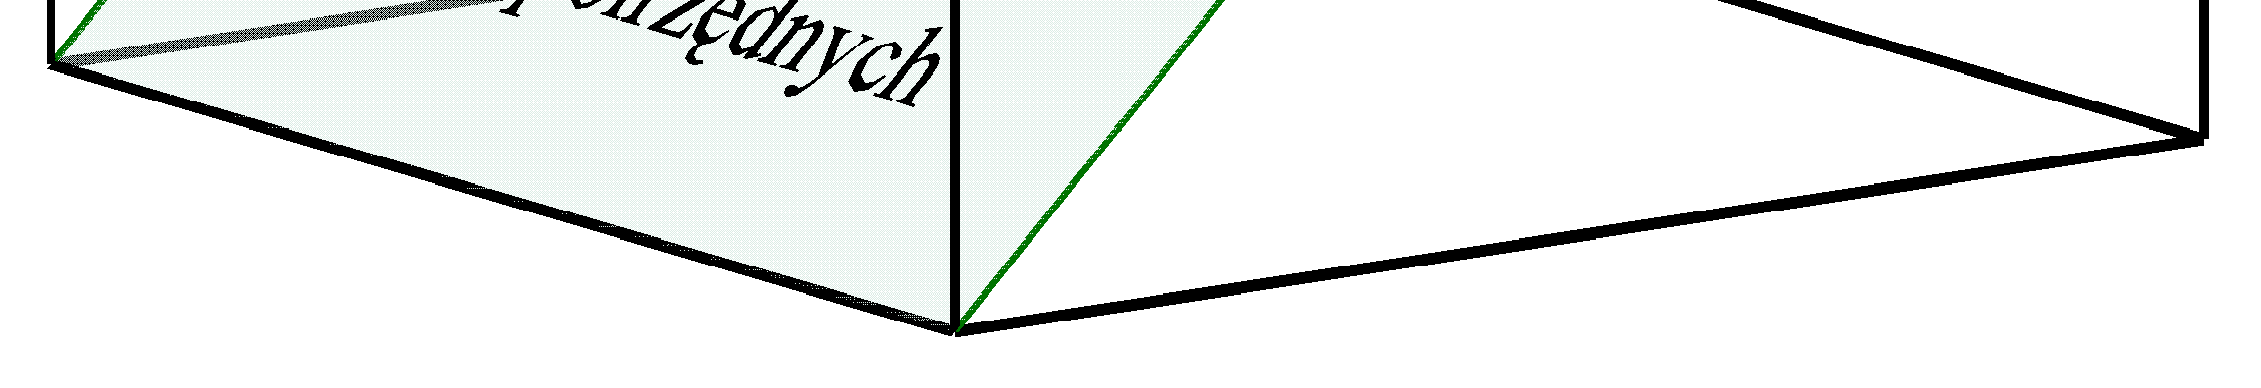 Płaszczyzna konstrukcyjna to płaszczyzna XY obowiązującego układu współrzędnych. Na tej płaszczyźnie pojawi się obiekt tworzony wskazaniami kursora, np. linia czy punkt.